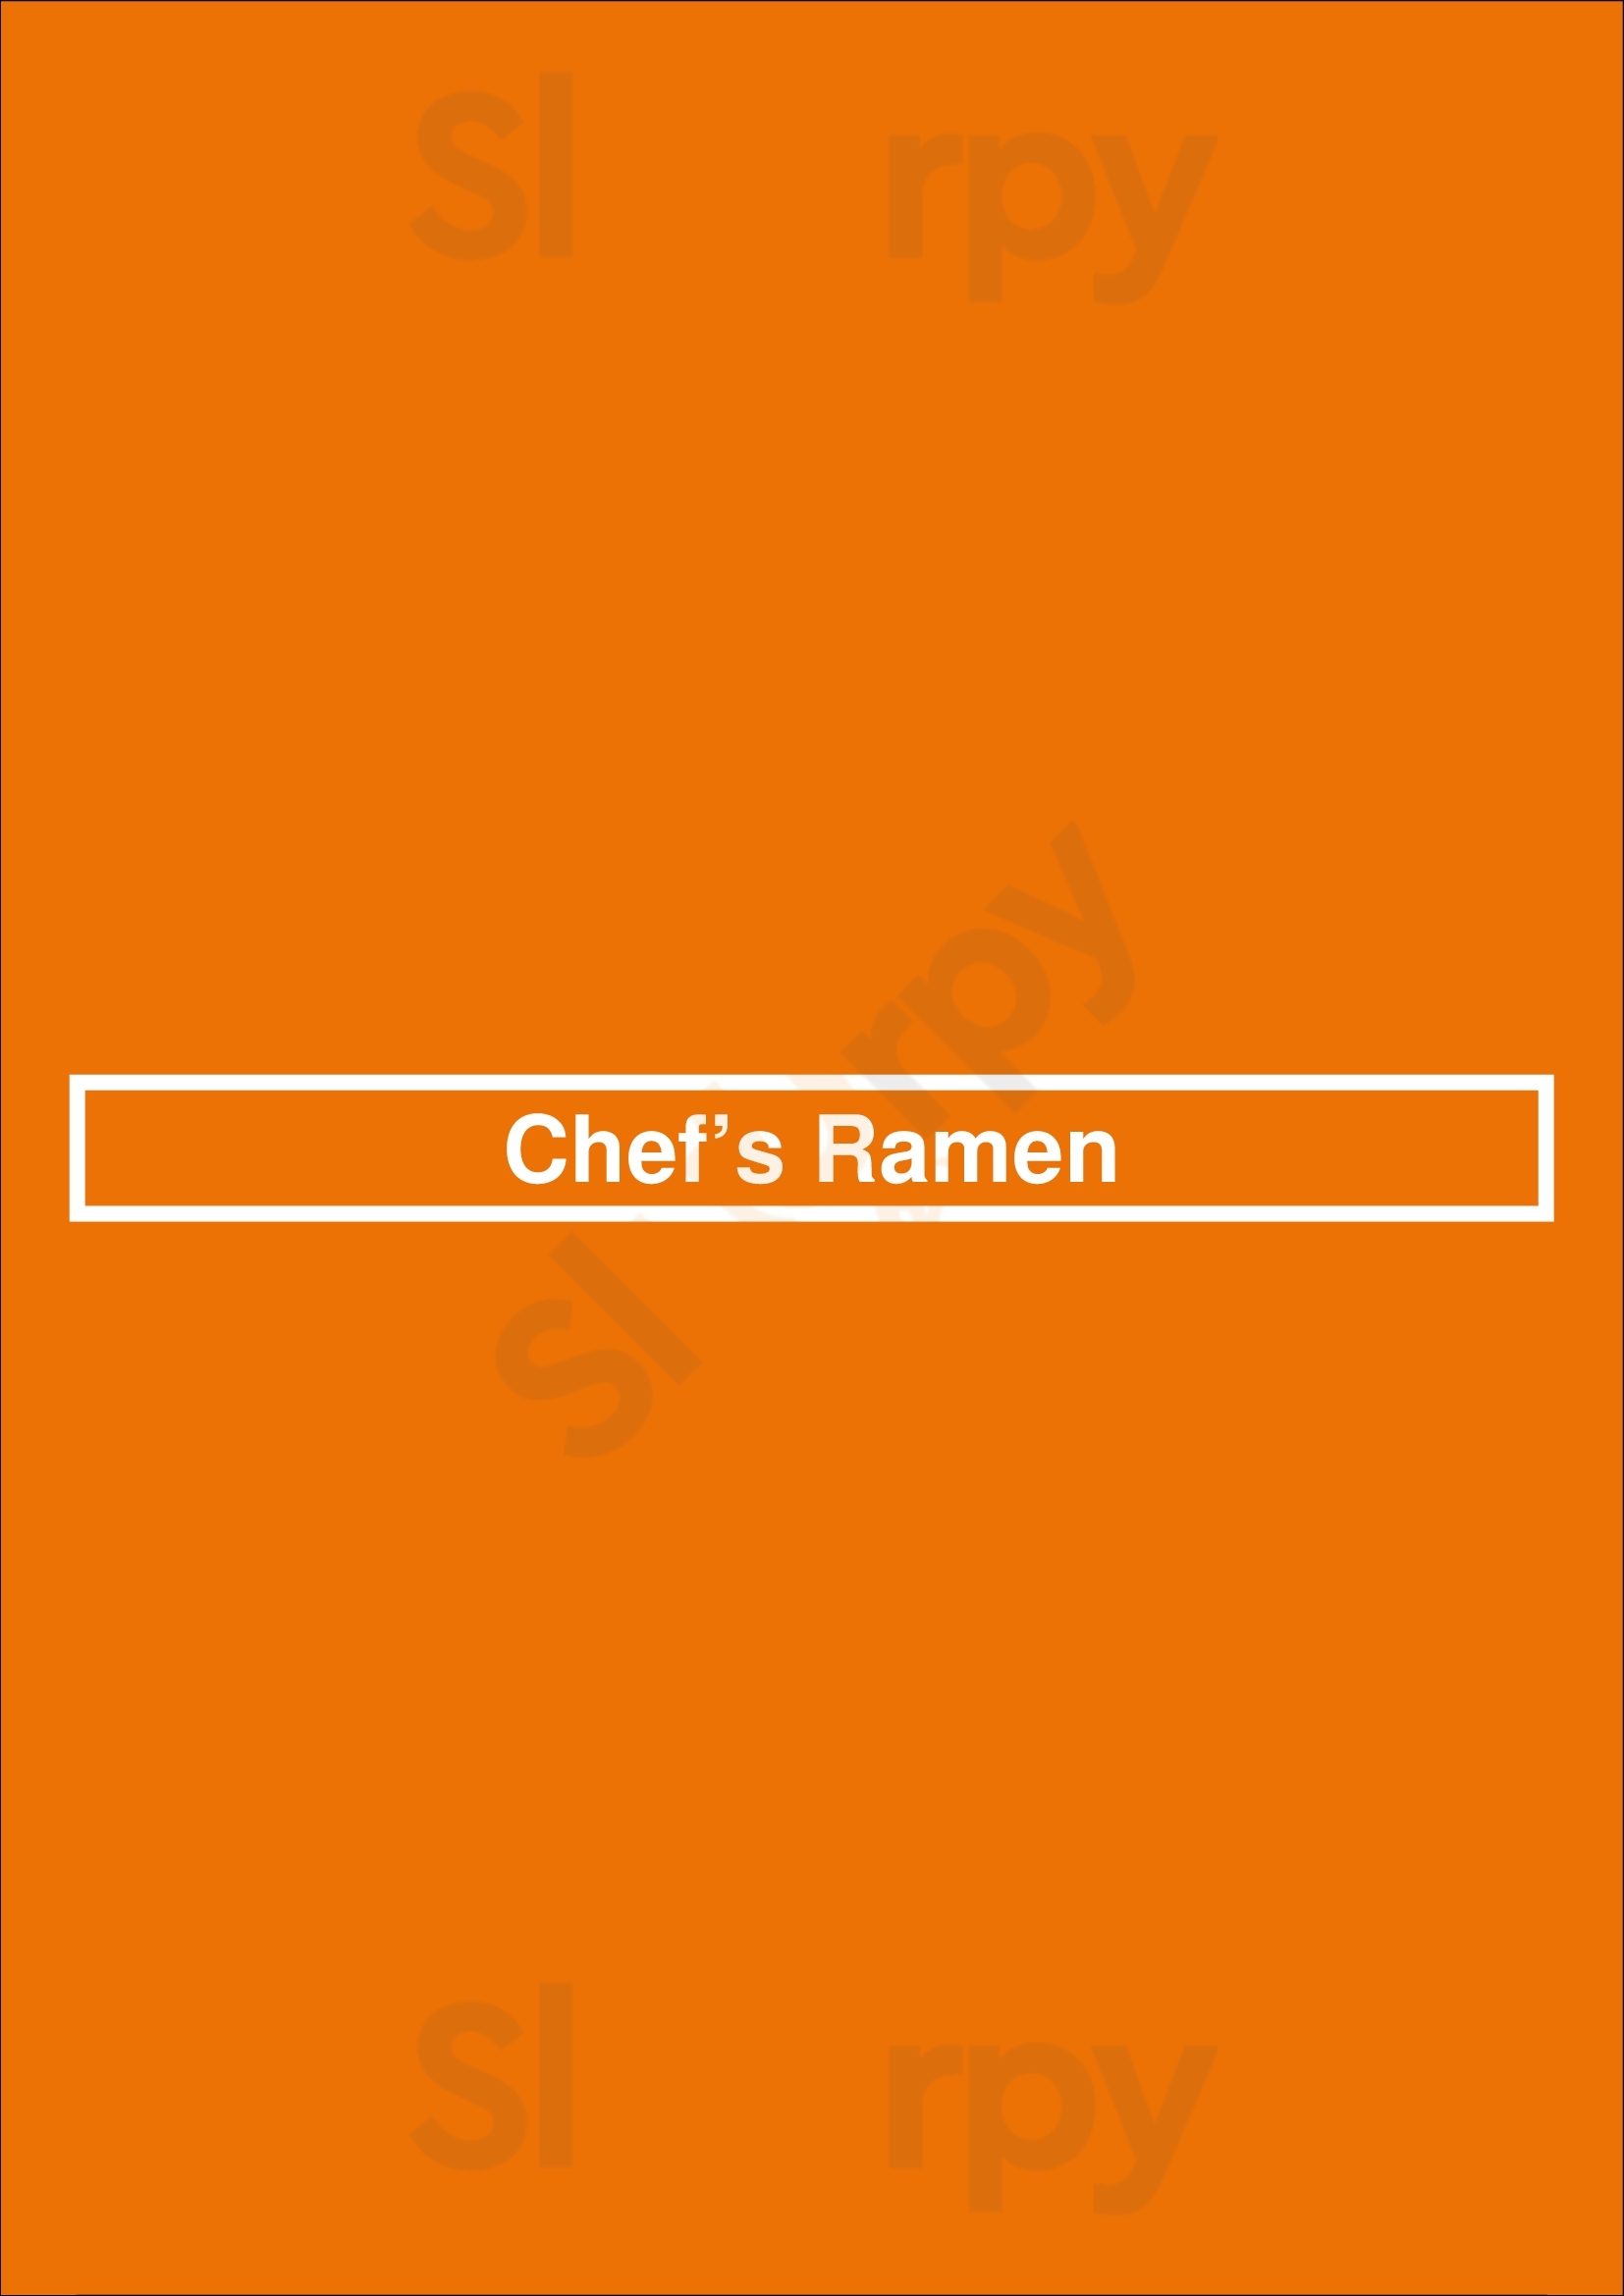 Chef’s Ramen Honolulu Menu - 1